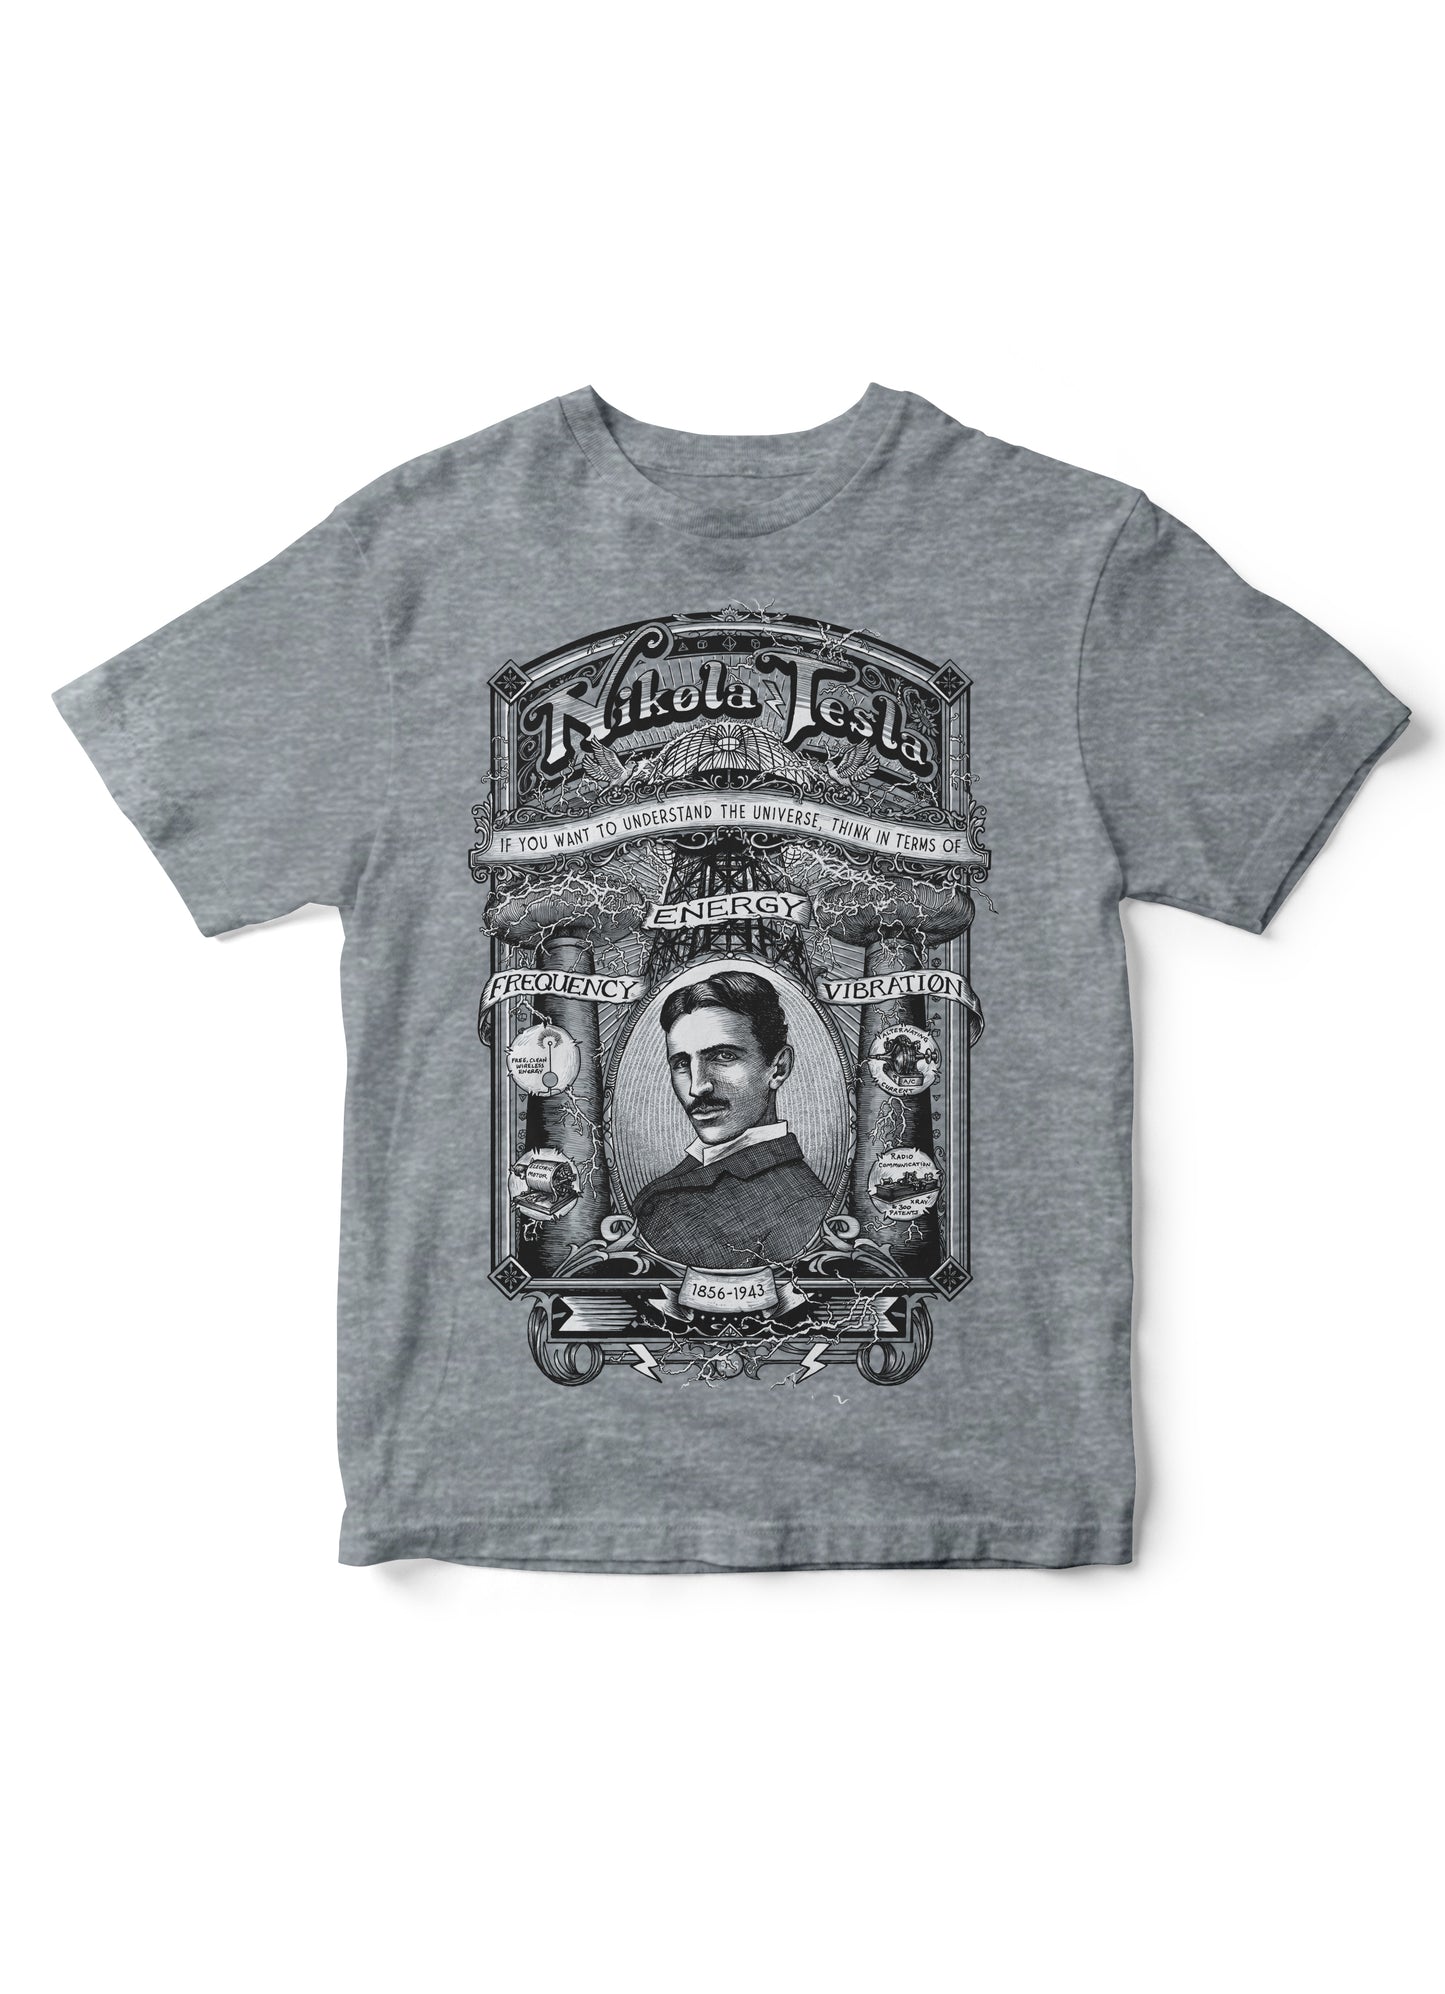 Tesla shirt for kids, science shirts for kids, Nikola Tesla shirt, science kid tees